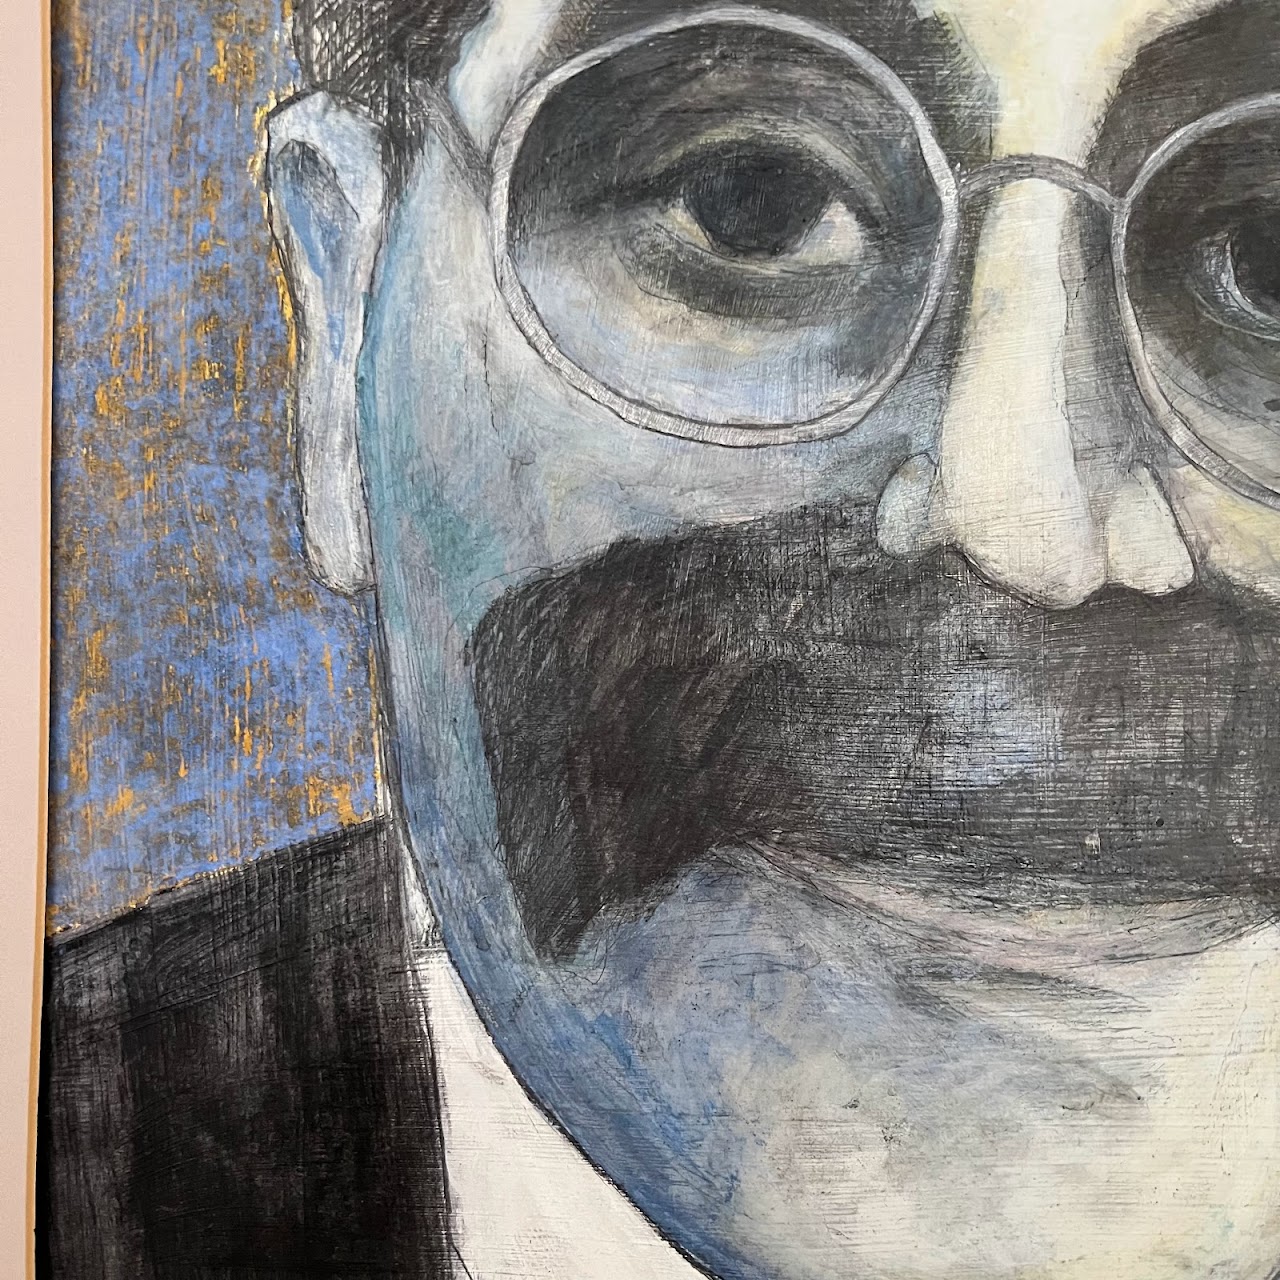 Groucho Marx Pencil and Gouache Portrait Painting